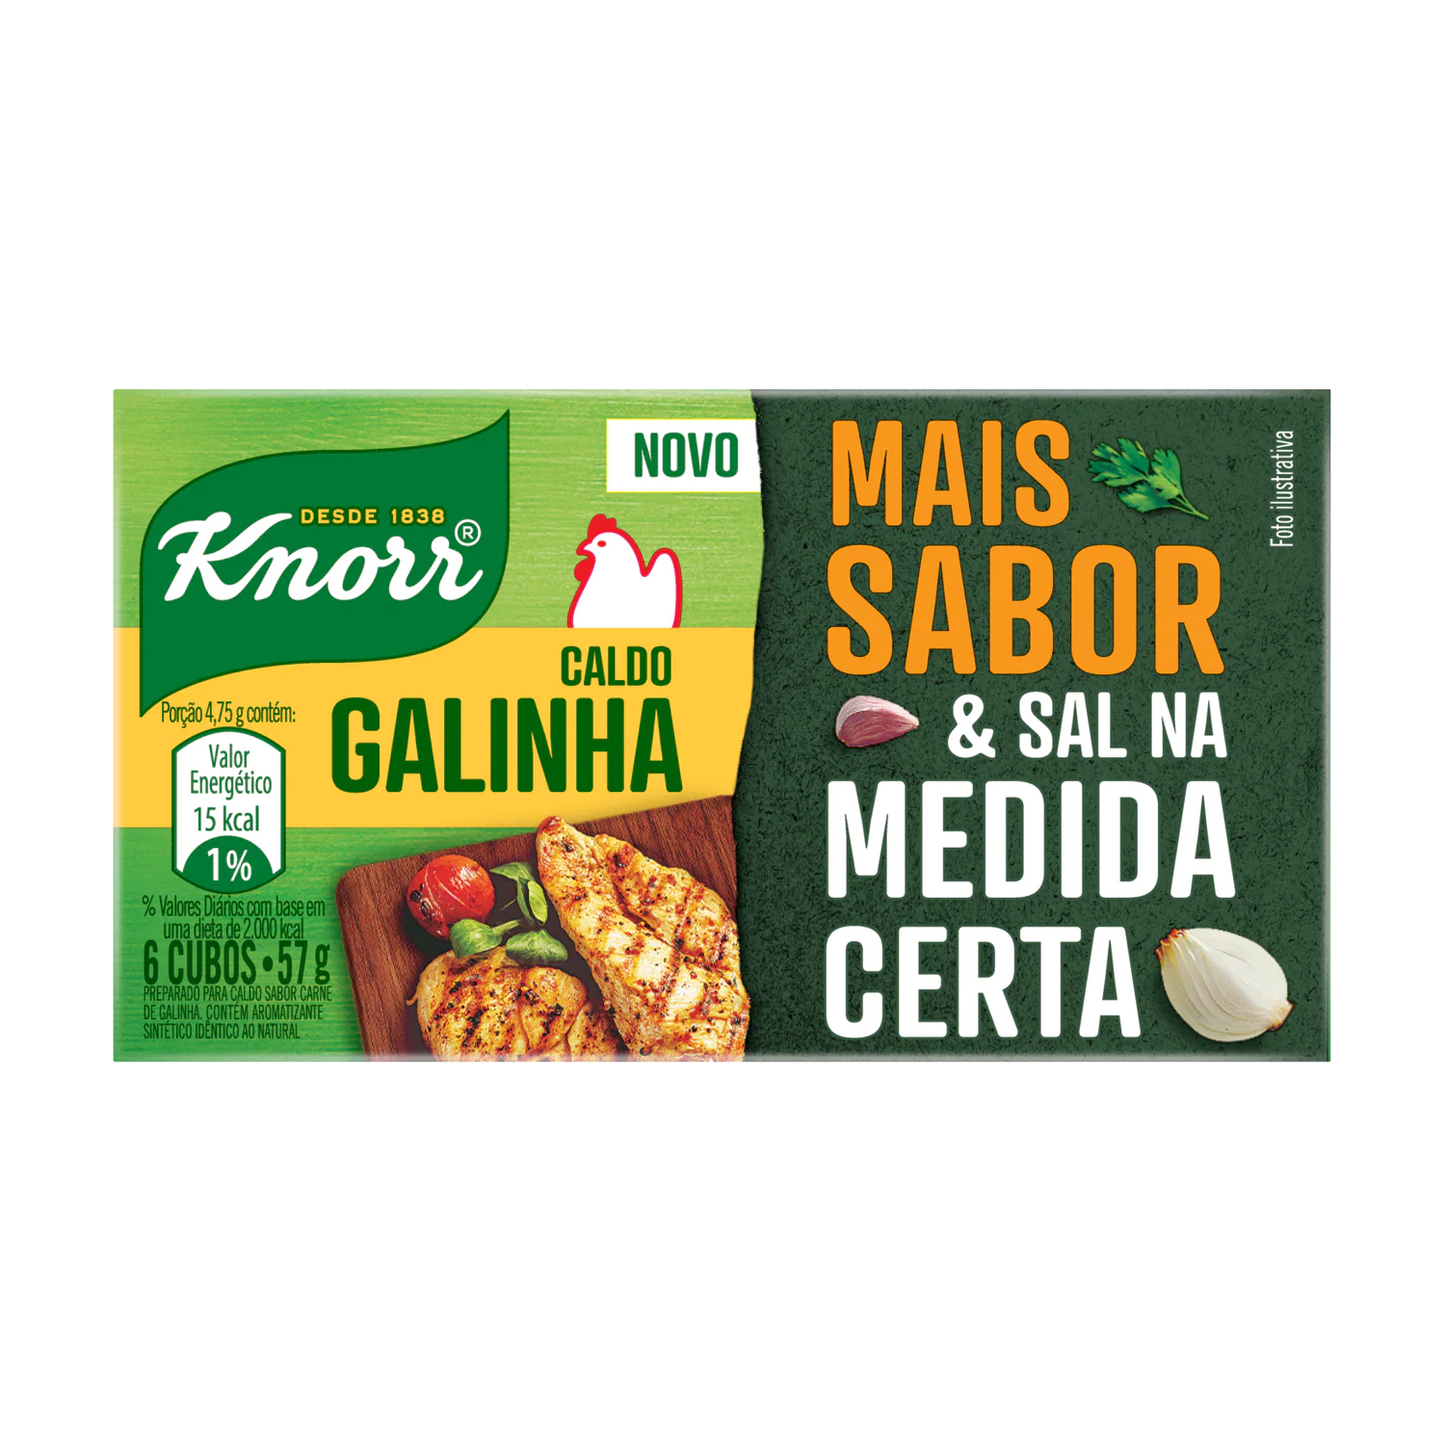 Knorr de Galinha 8 - 16 cubos